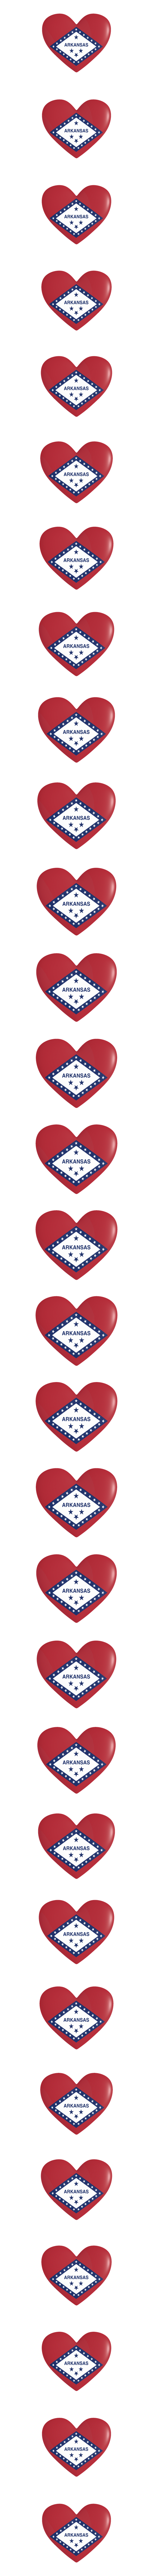 Arkansas heart